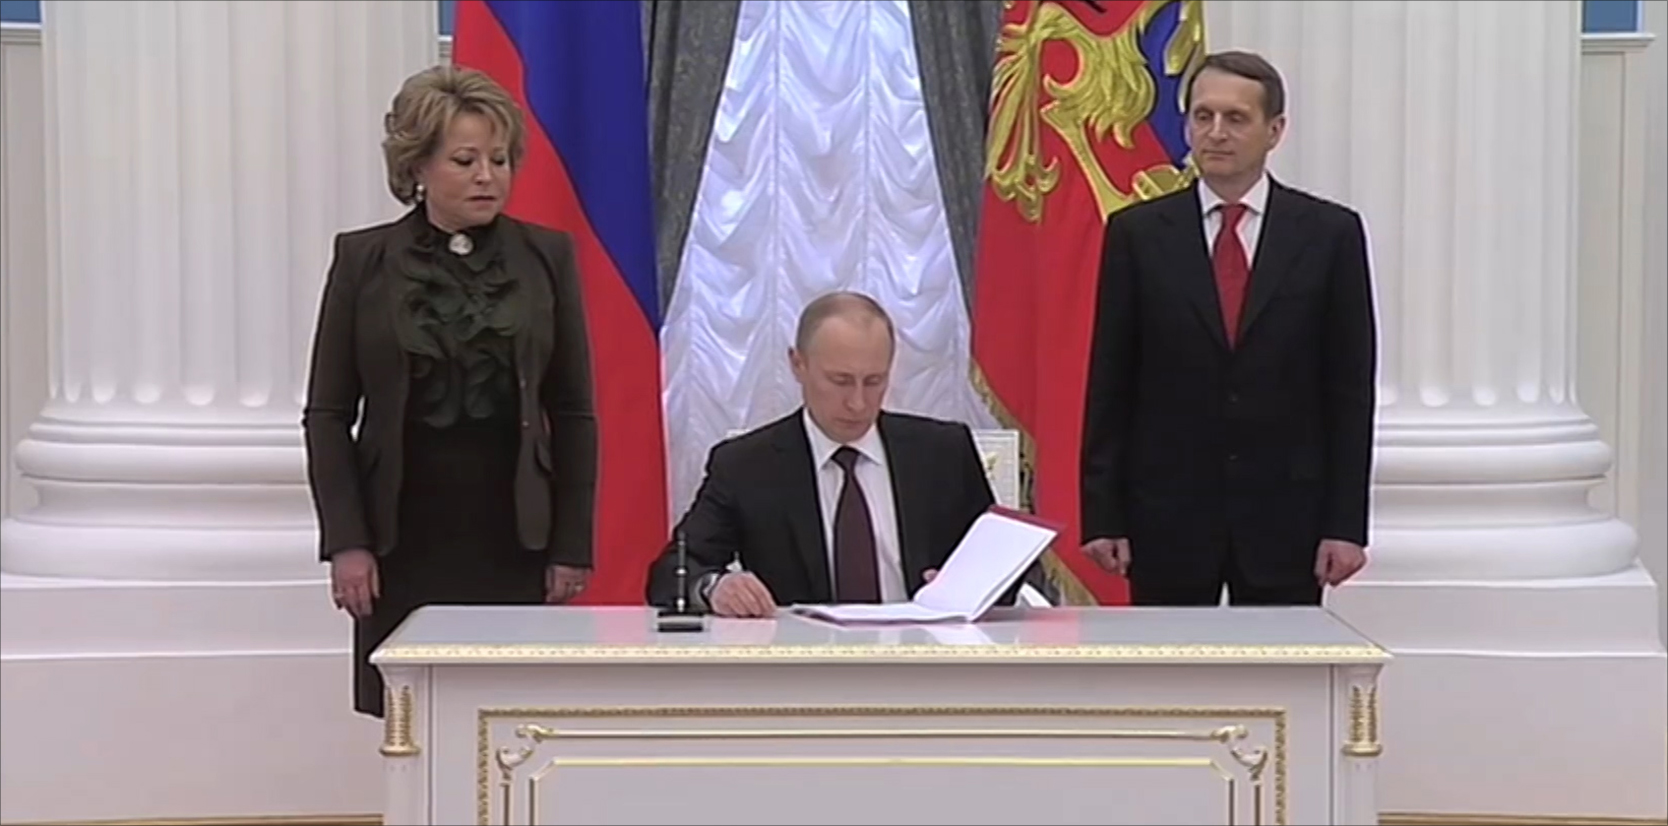 ‪بوتين يوقع رسميا على انضمام شبه جزيرة القرم‬ بوتين يوقع رسميا على انضمام شبه جزيرة القرم (الجزيرة)